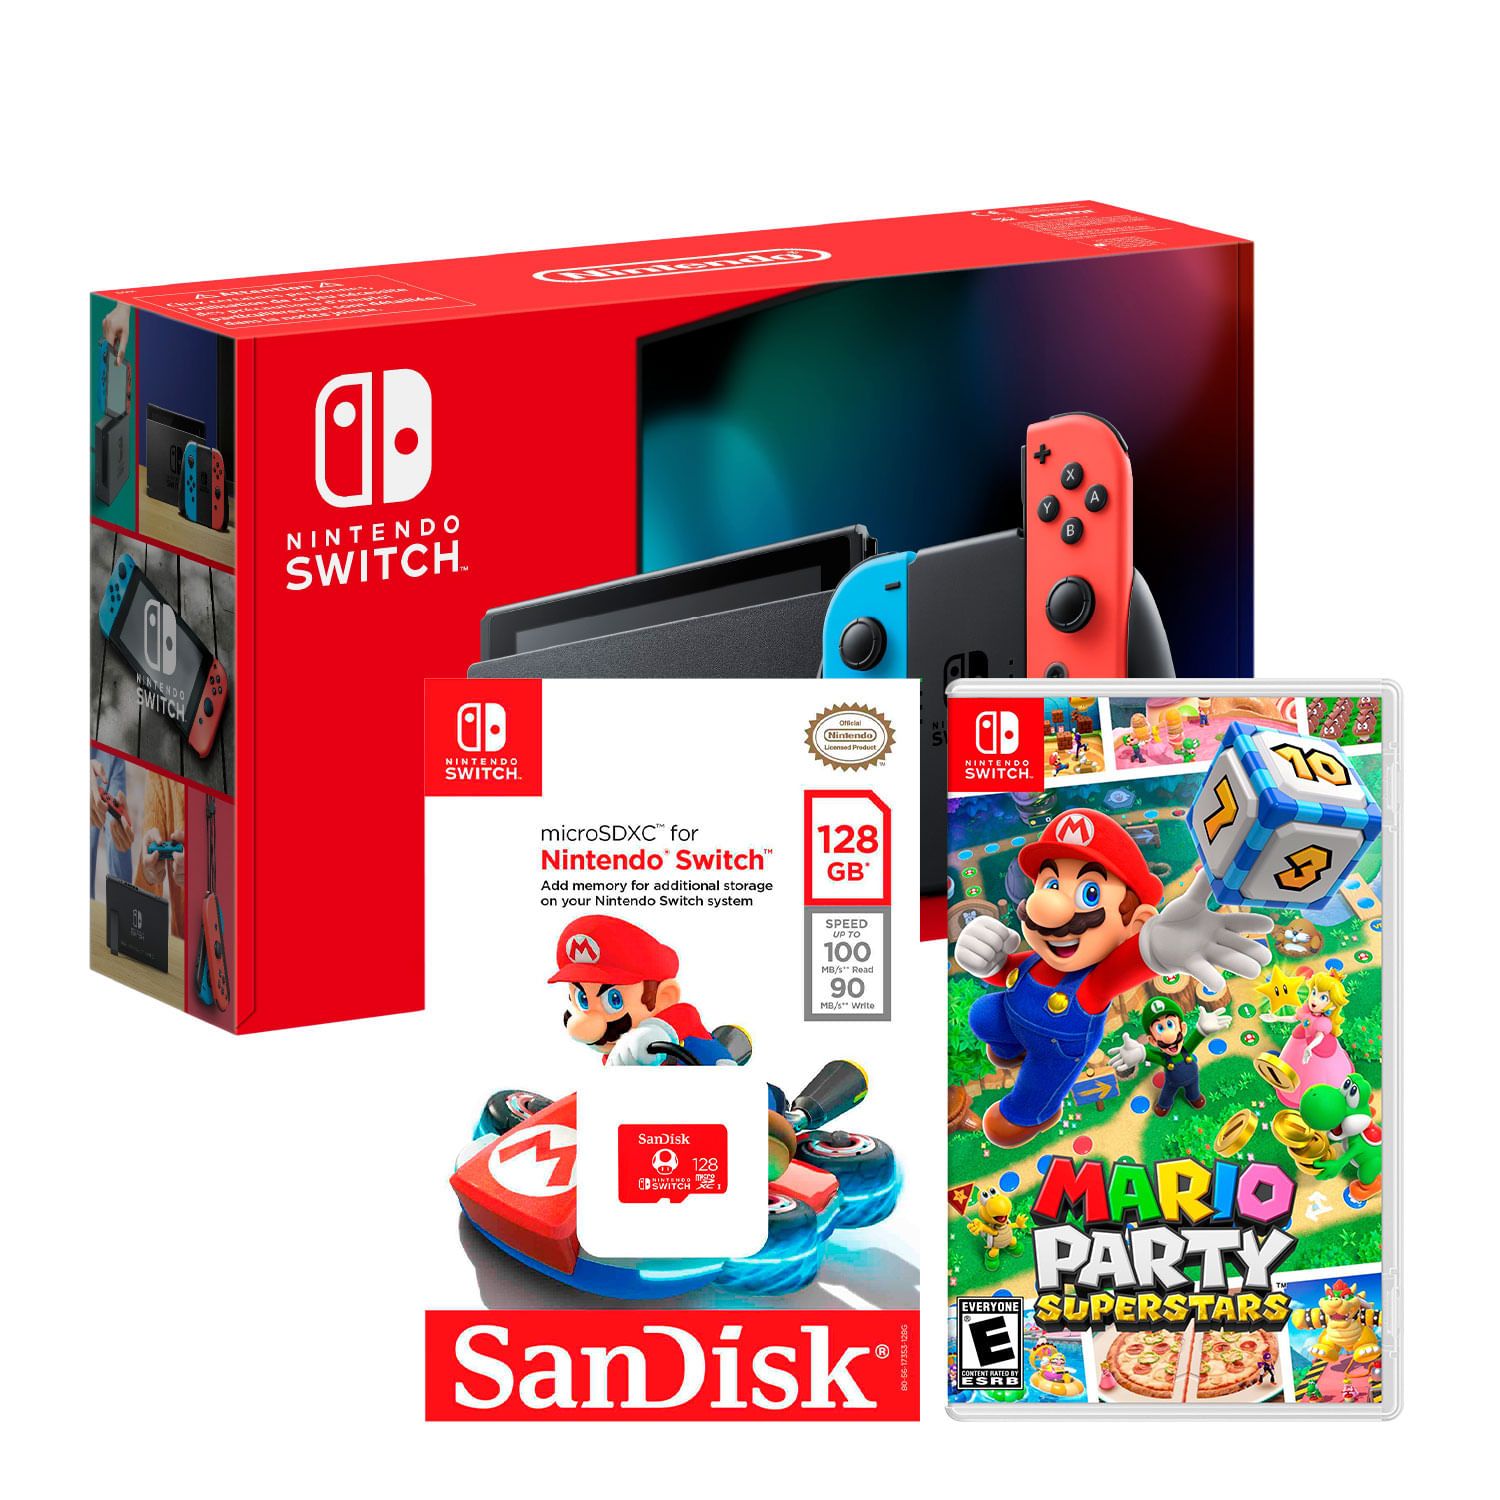 Consola Nintendo Switch Neon 2019 + Mario Party Superstar + Memoria Micro SD 128 GB Edicion Mario